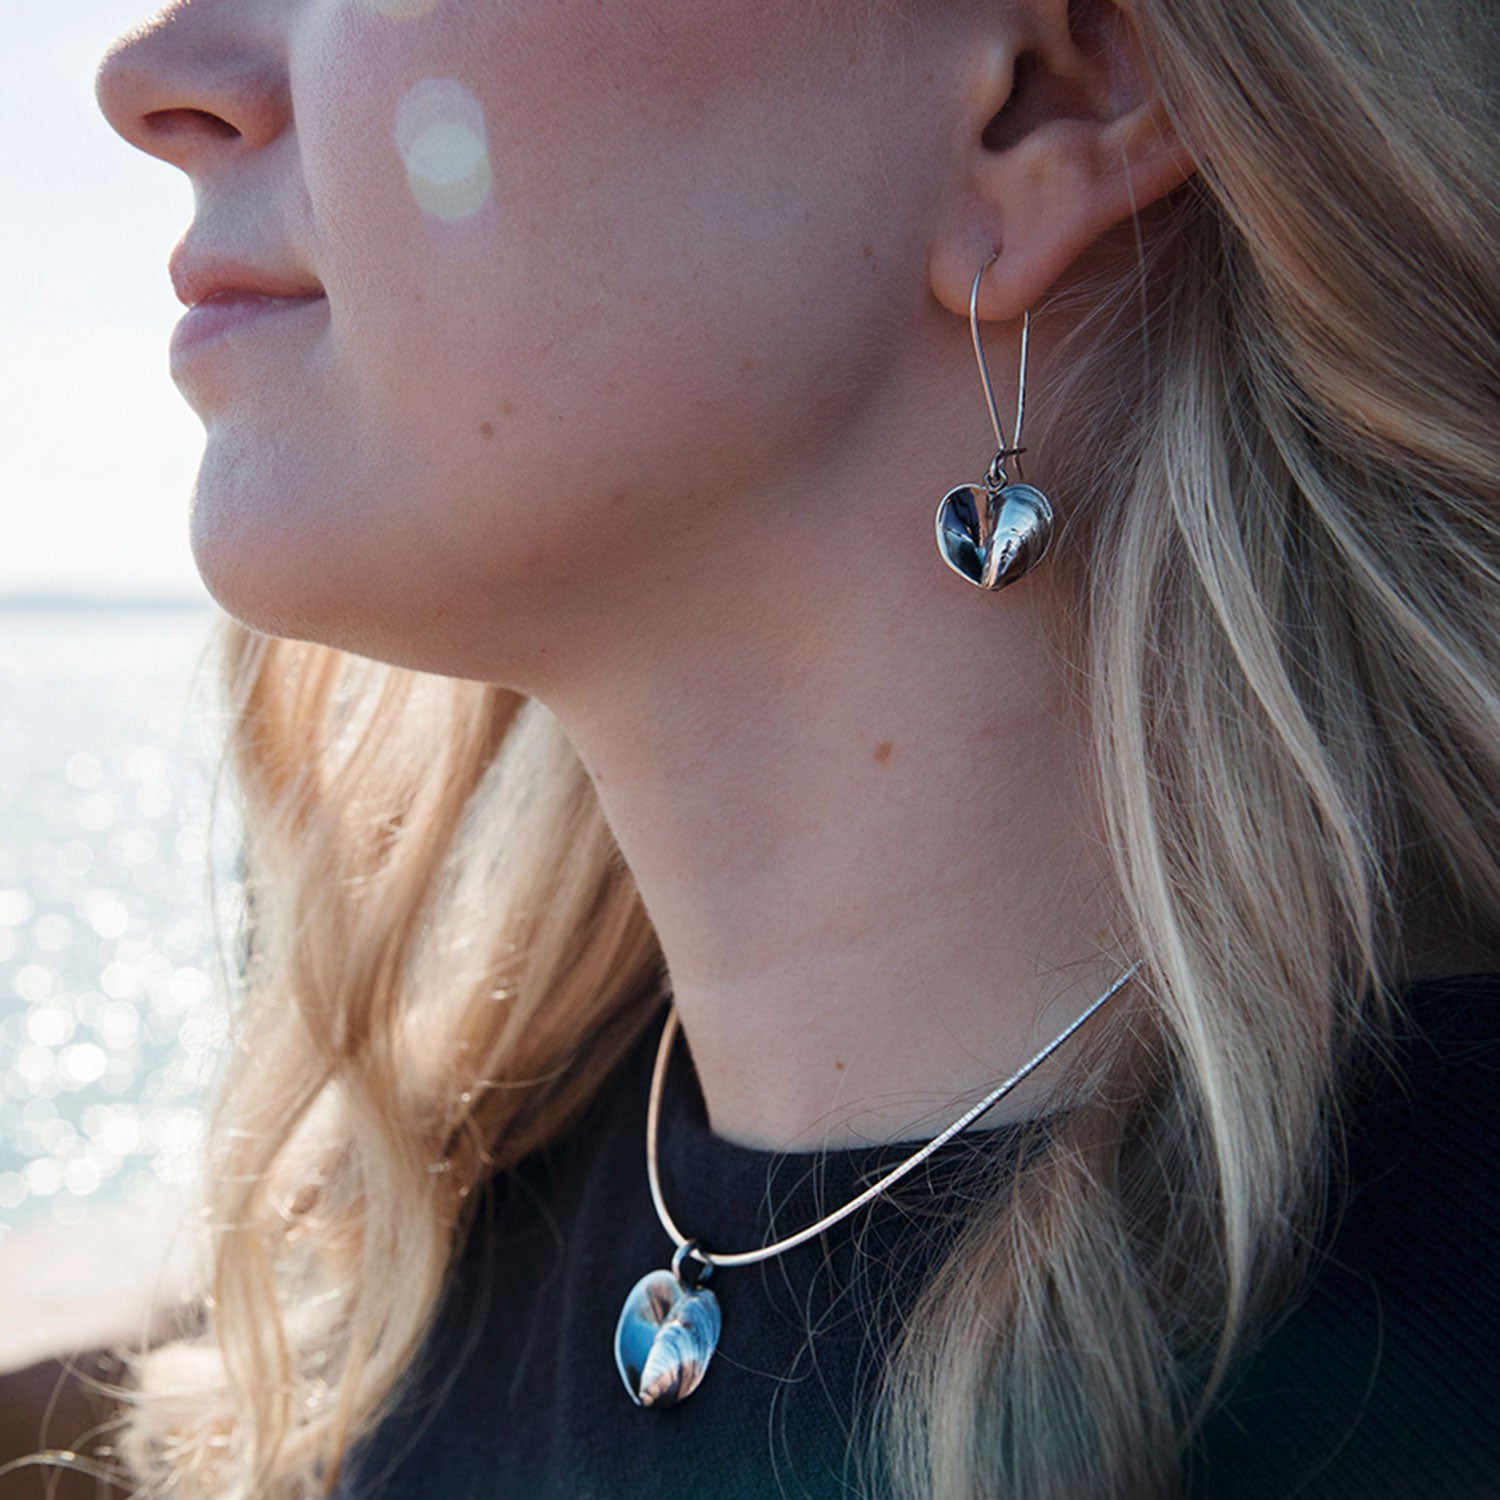 BLÅMUSSLA HJÄRTA (Blue Mussel Heart) earrings